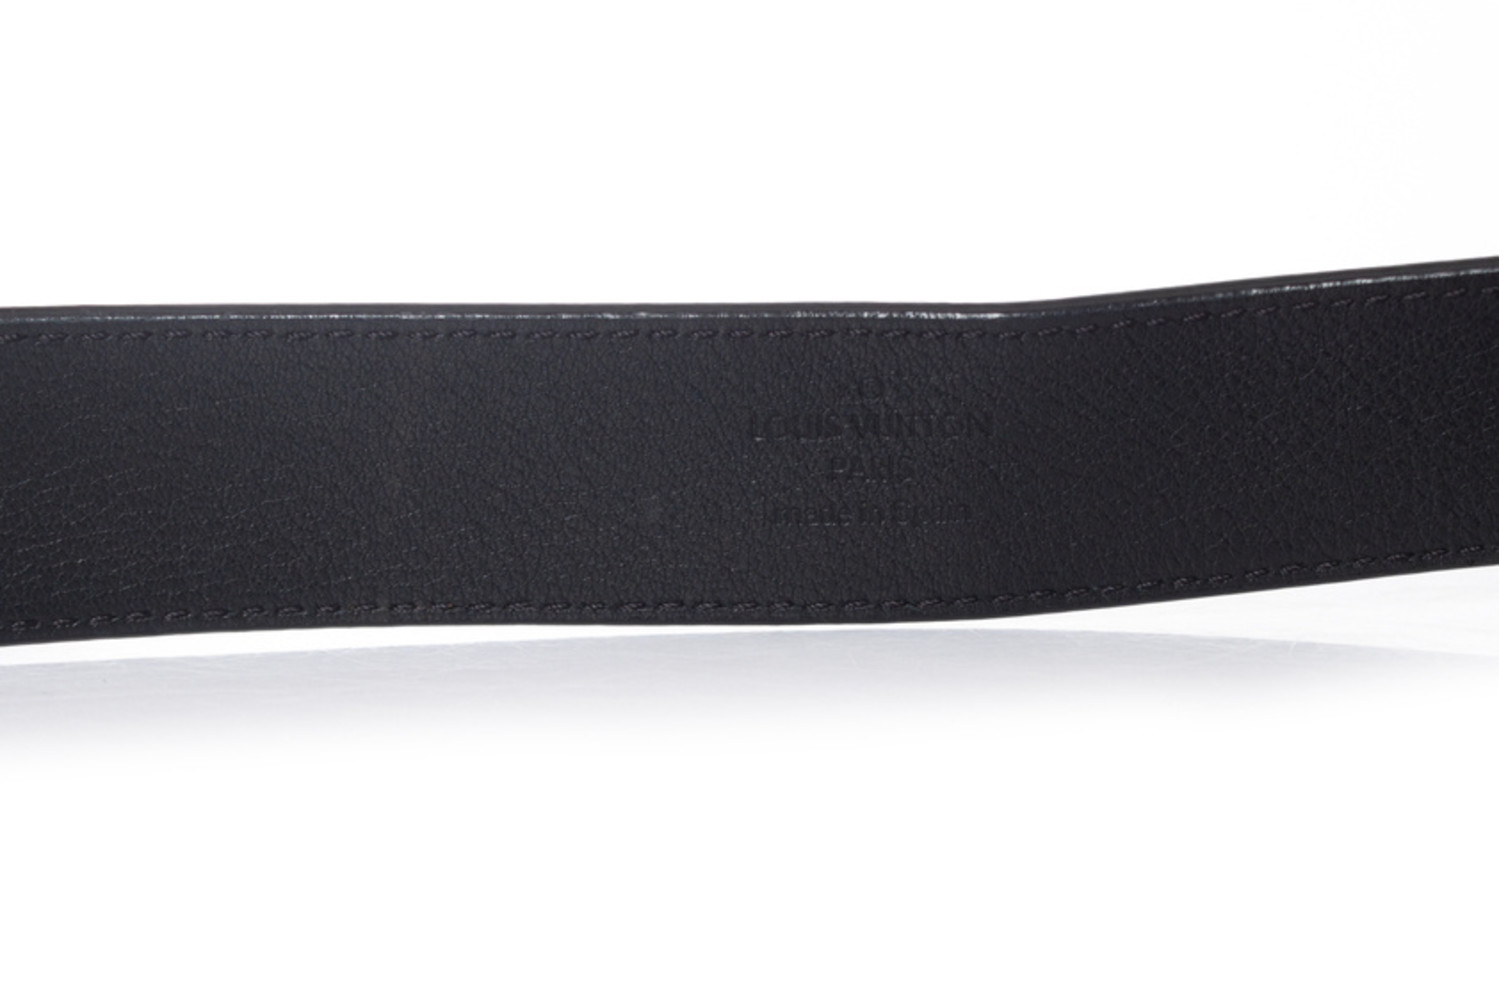 LOUIS VUITTON Twist Epi Leather Belt Black 90/36